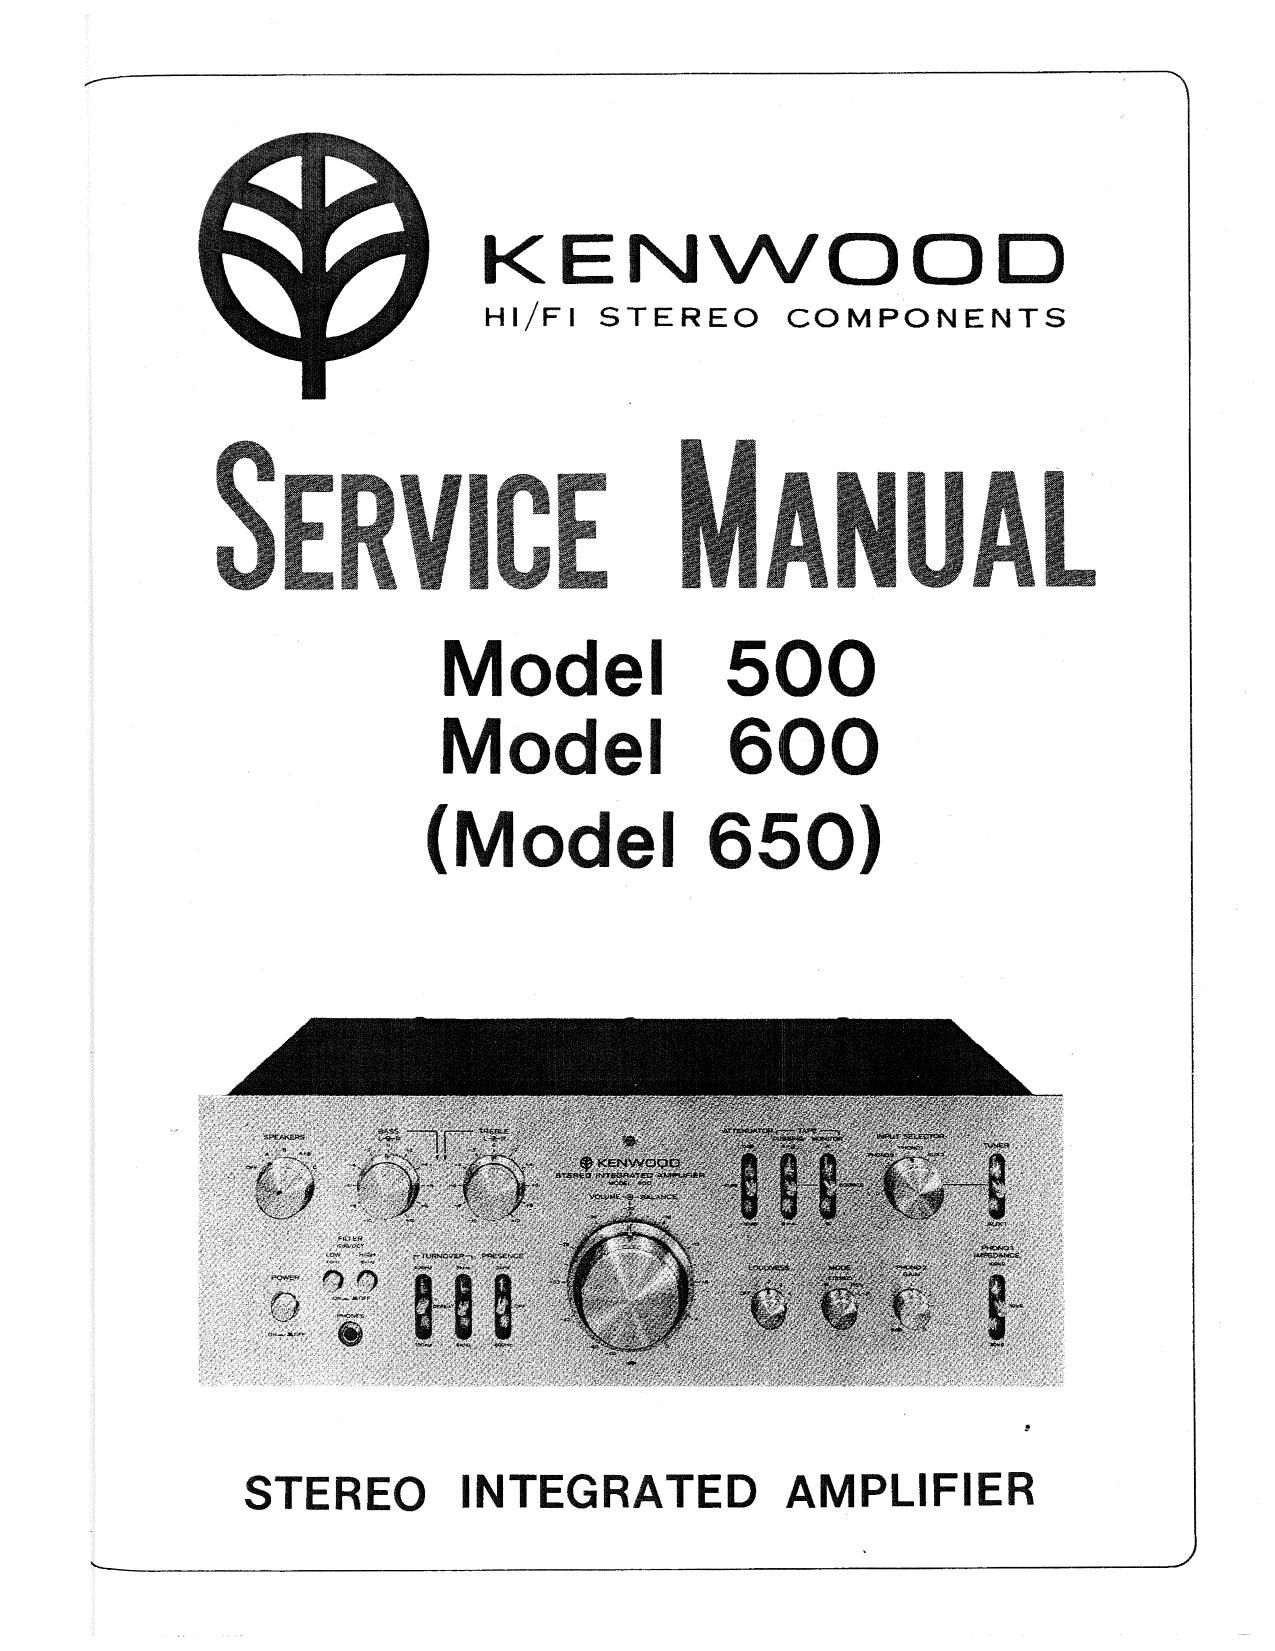 Kenwood 600 Service Manual